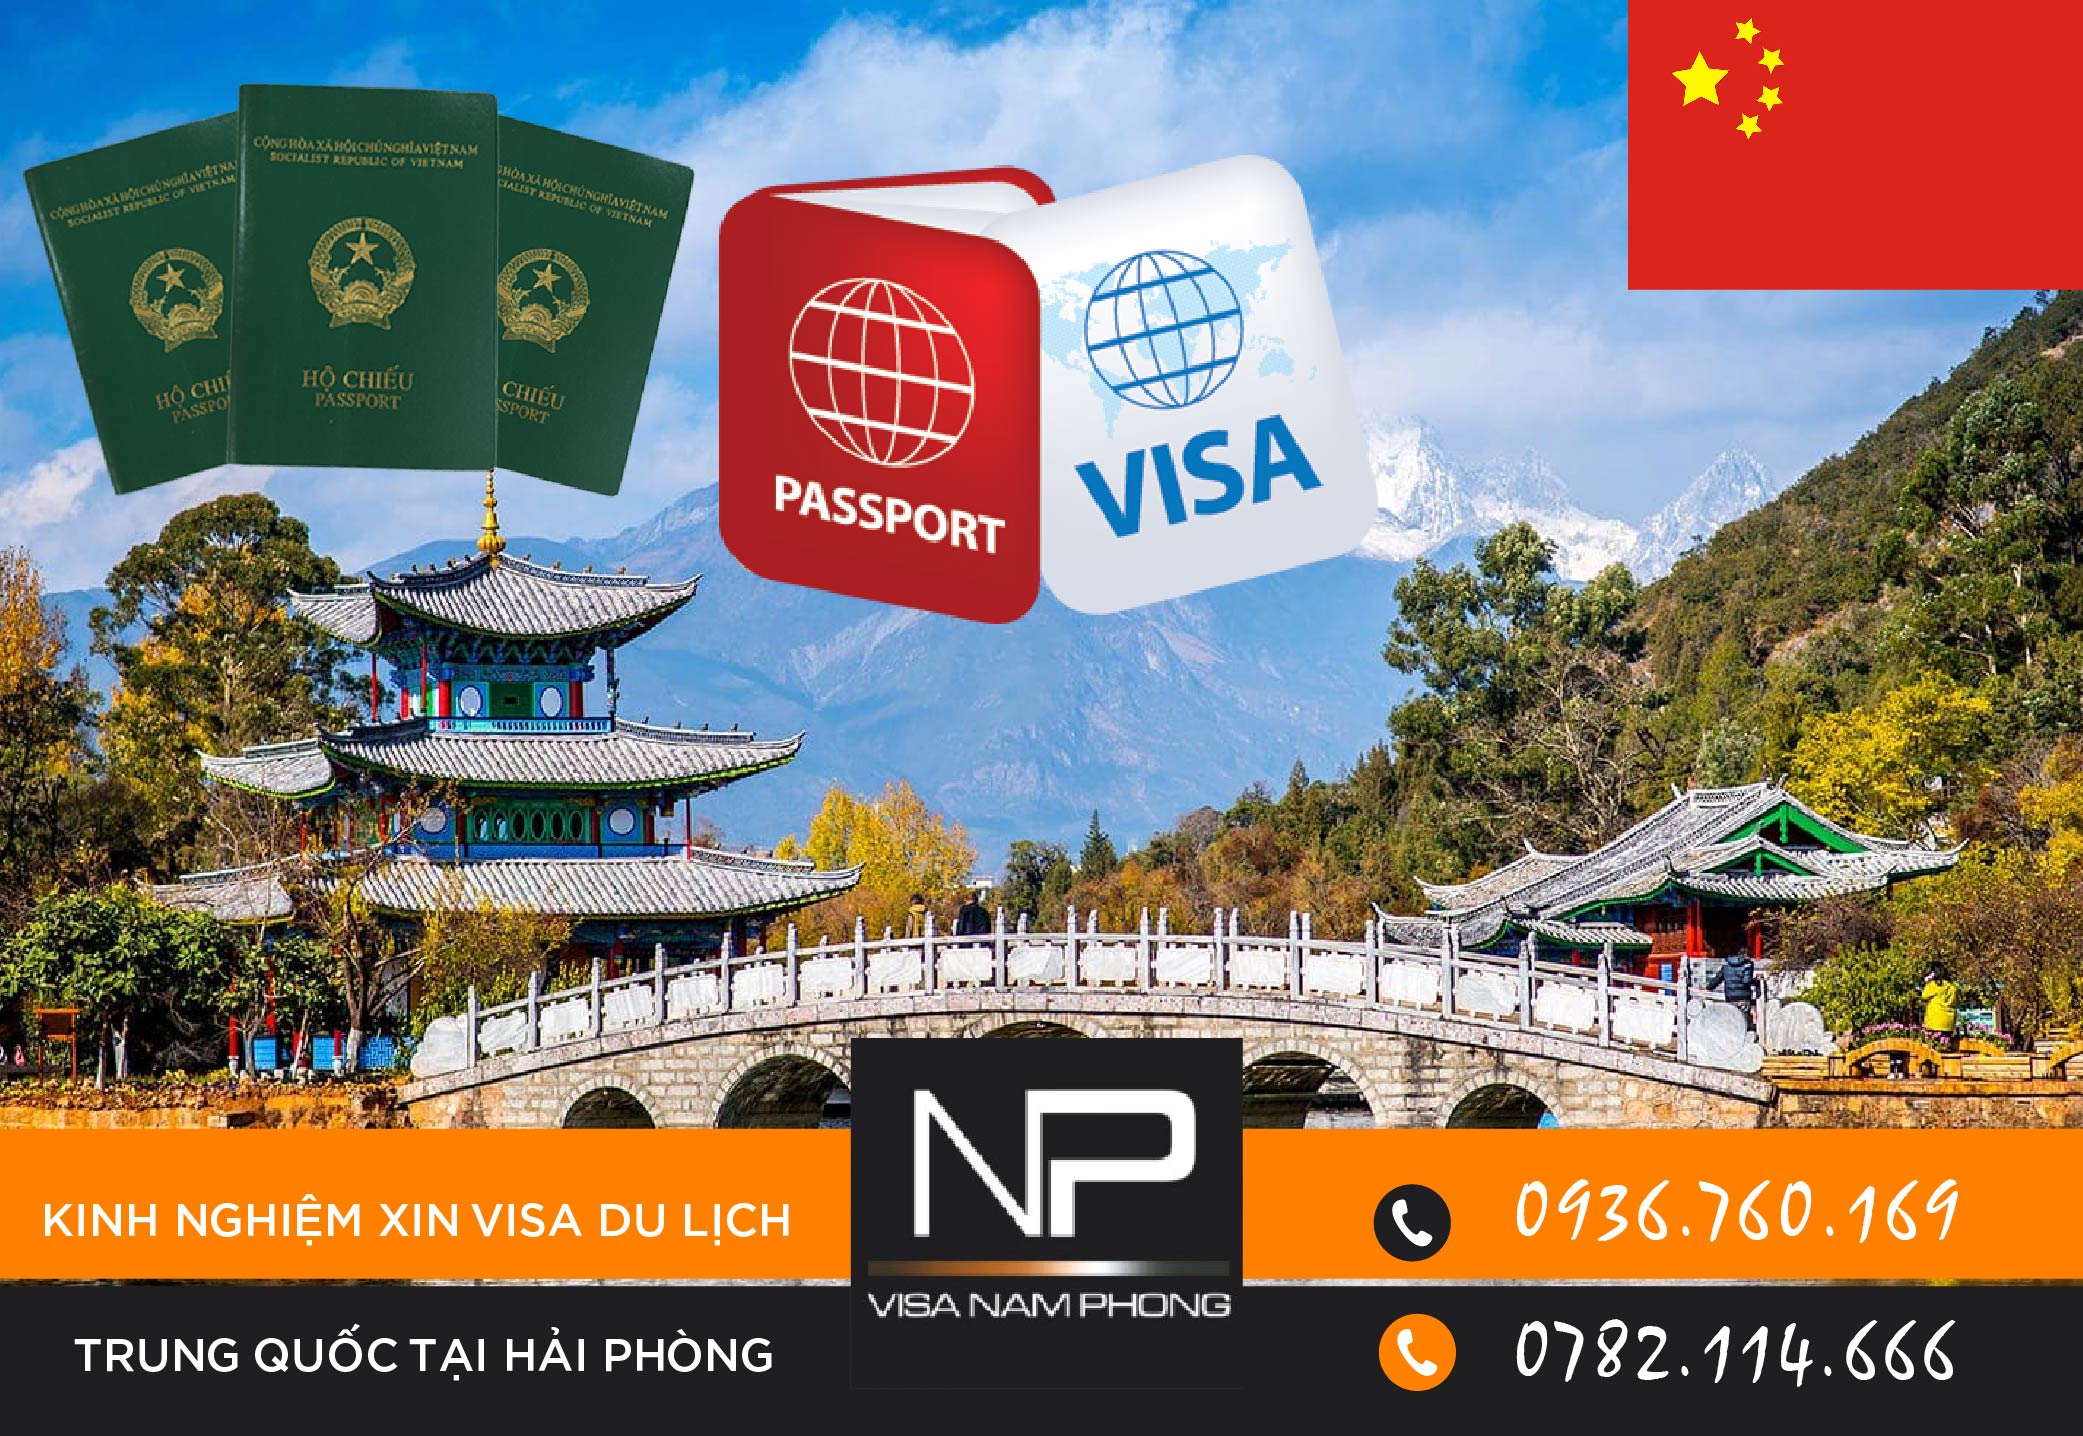 Kinh nghiệm xin visa du lịch Trung Quốc tại Hải Phòng